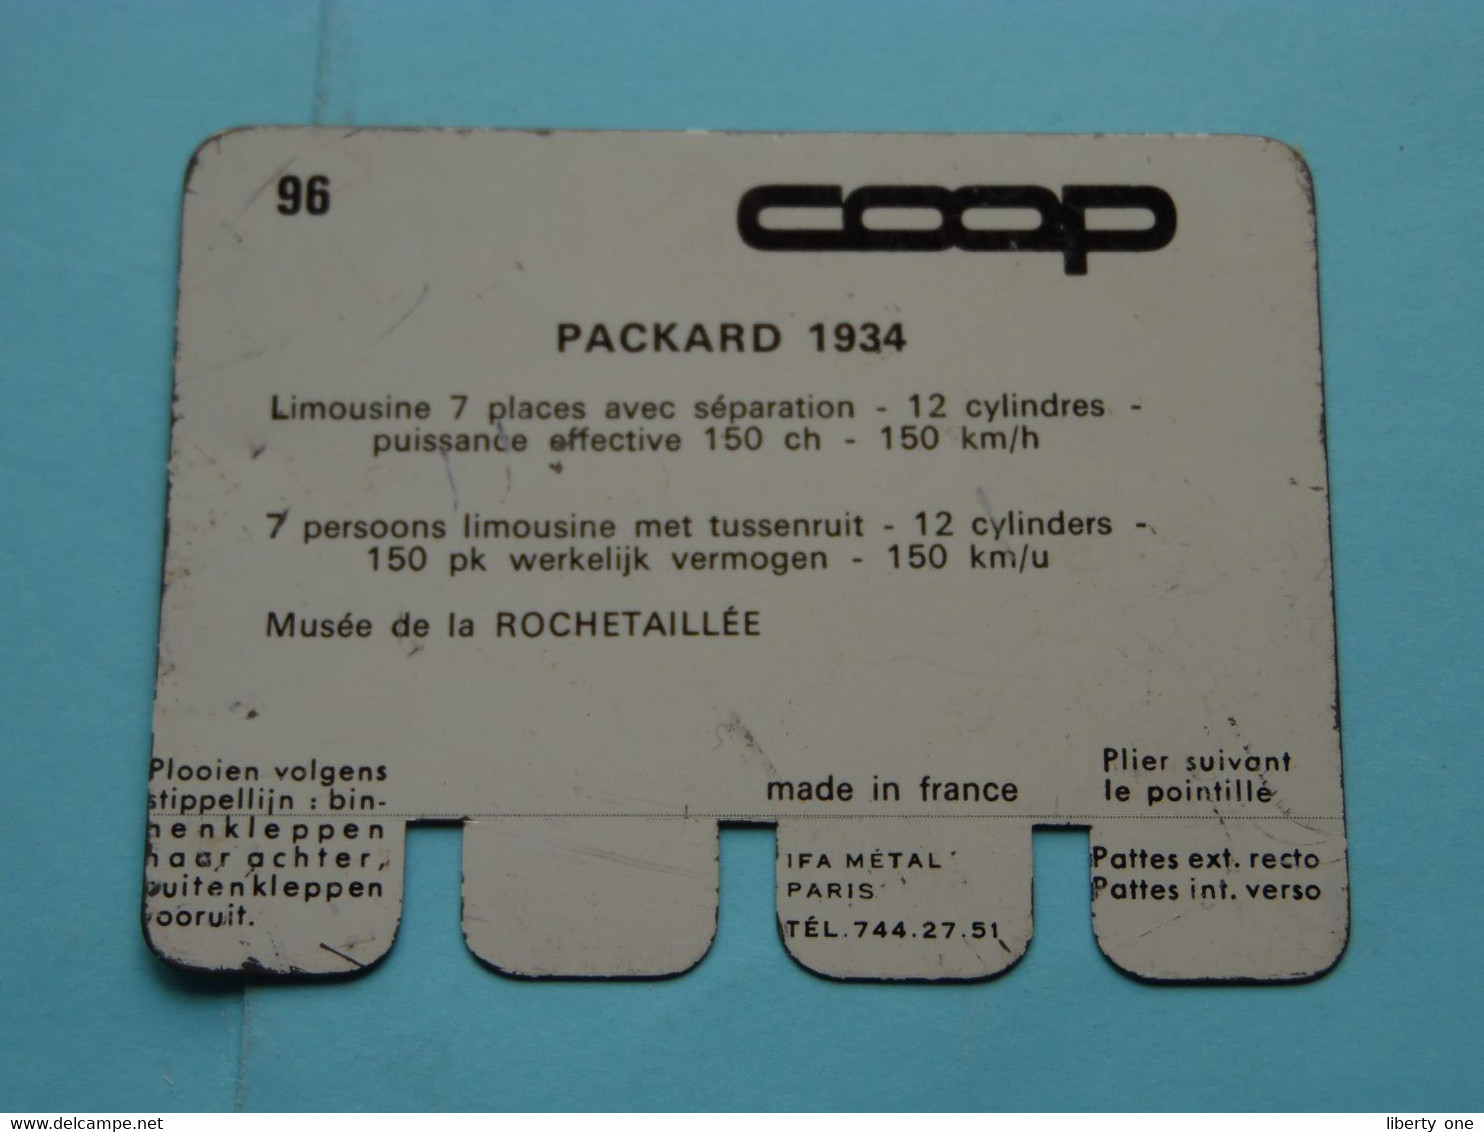 PACKARD 1934 - Coll. N° 96 NL/FR ( Plaquette C O O P - Voir Photo - IFA Metal Paris ) ! - Plaques En Tôle (après 1960)